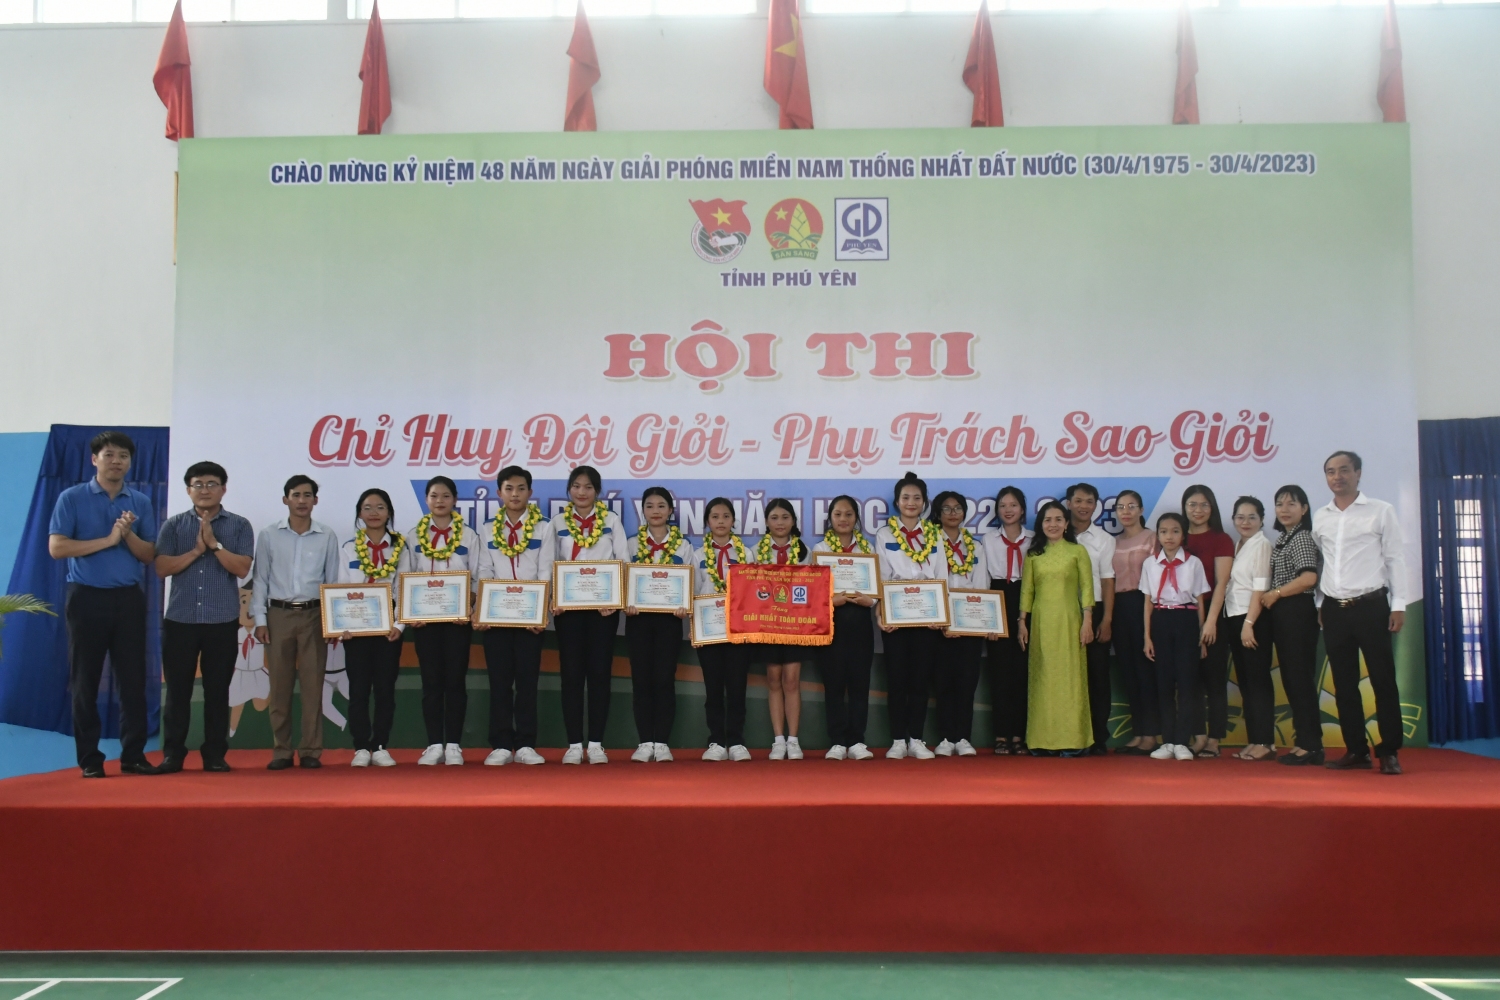 Ban tổ chức trao giải nhất toàn đoàn cho Hội đồng Đội huyện Tuy An.